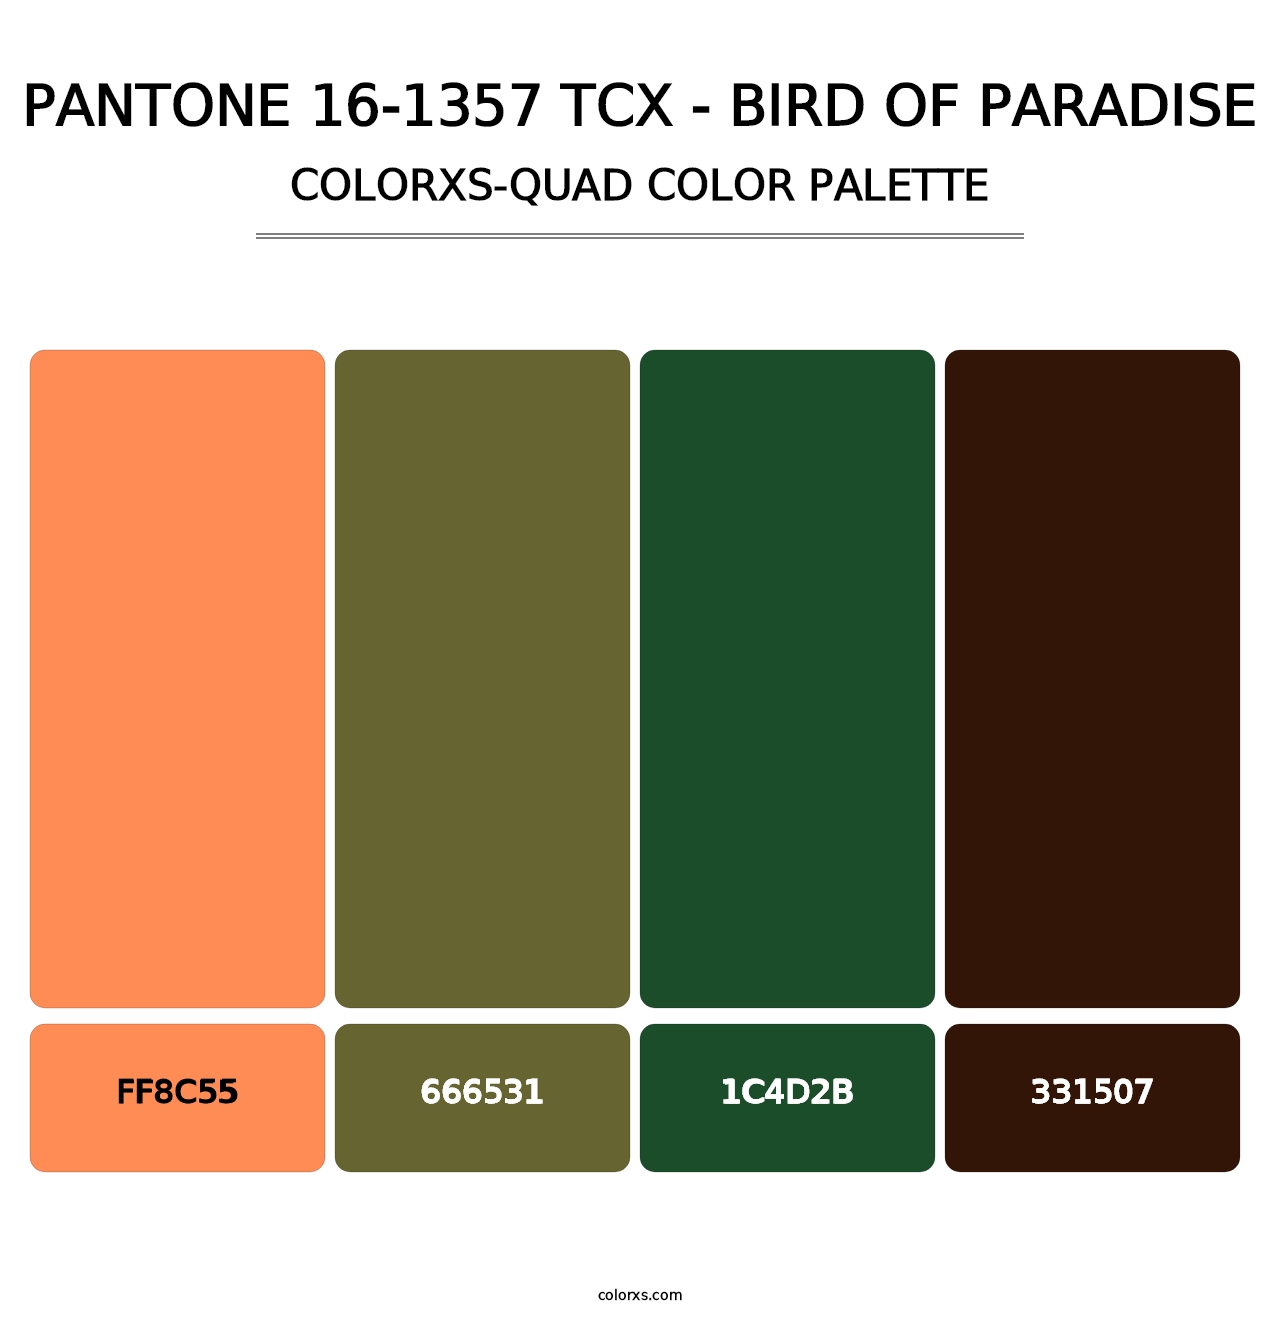 PANTONE 16-1357 TCX - Bird of Paradise - Colorxs Quad Palette